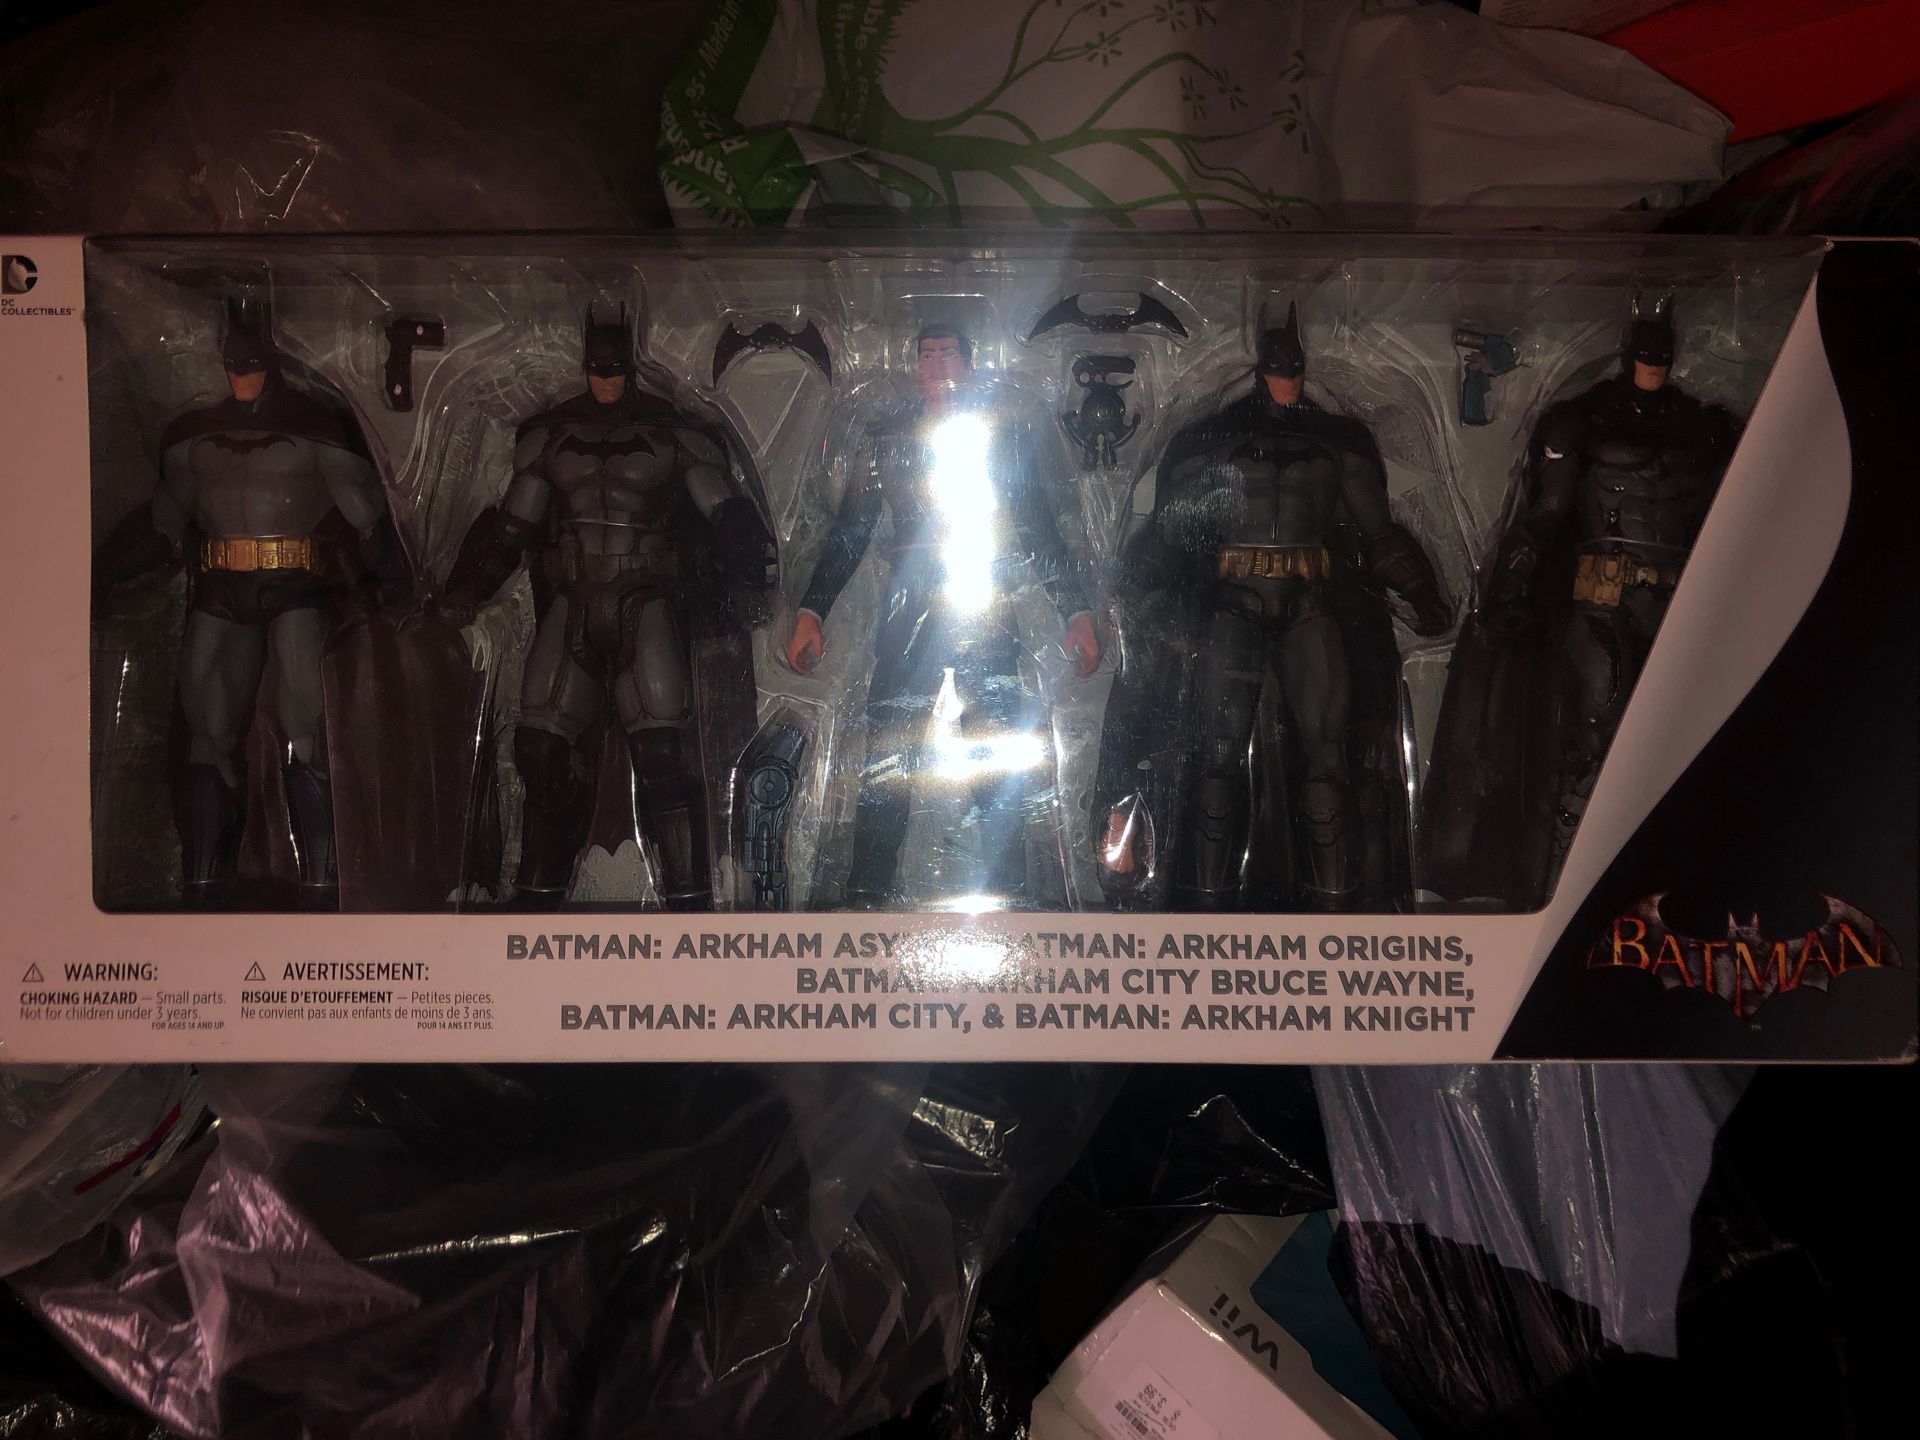 Batman figures/toys